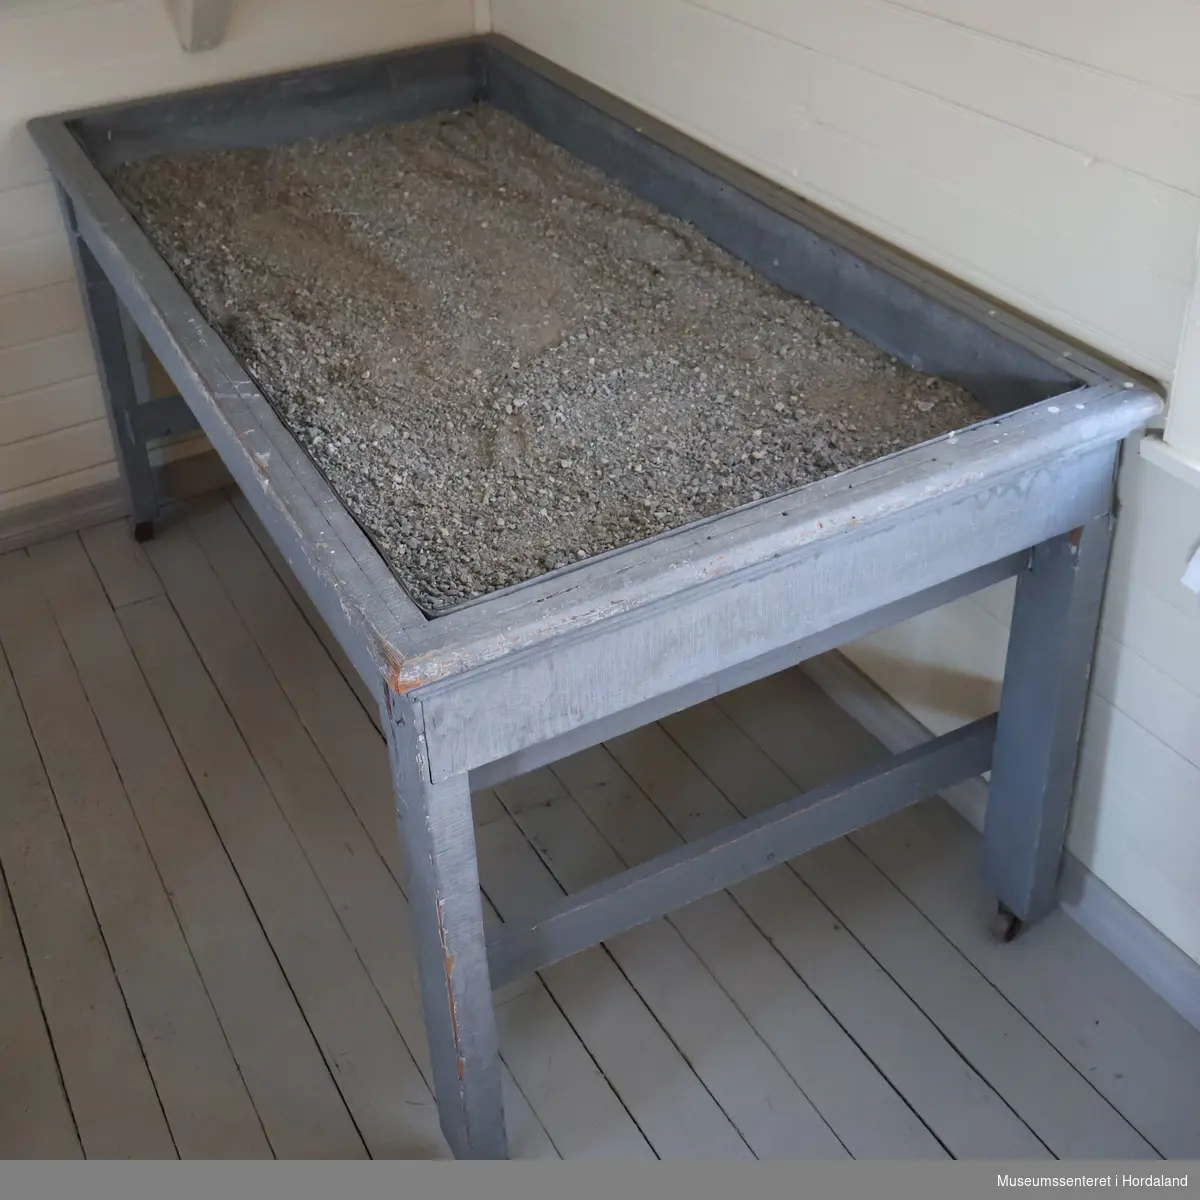 Rektangulært, gråmalt bord på fire bein med hjul. Bordplaten er en sandkasse fôret med sink. Oppi sinkbaljen er det grov sand.